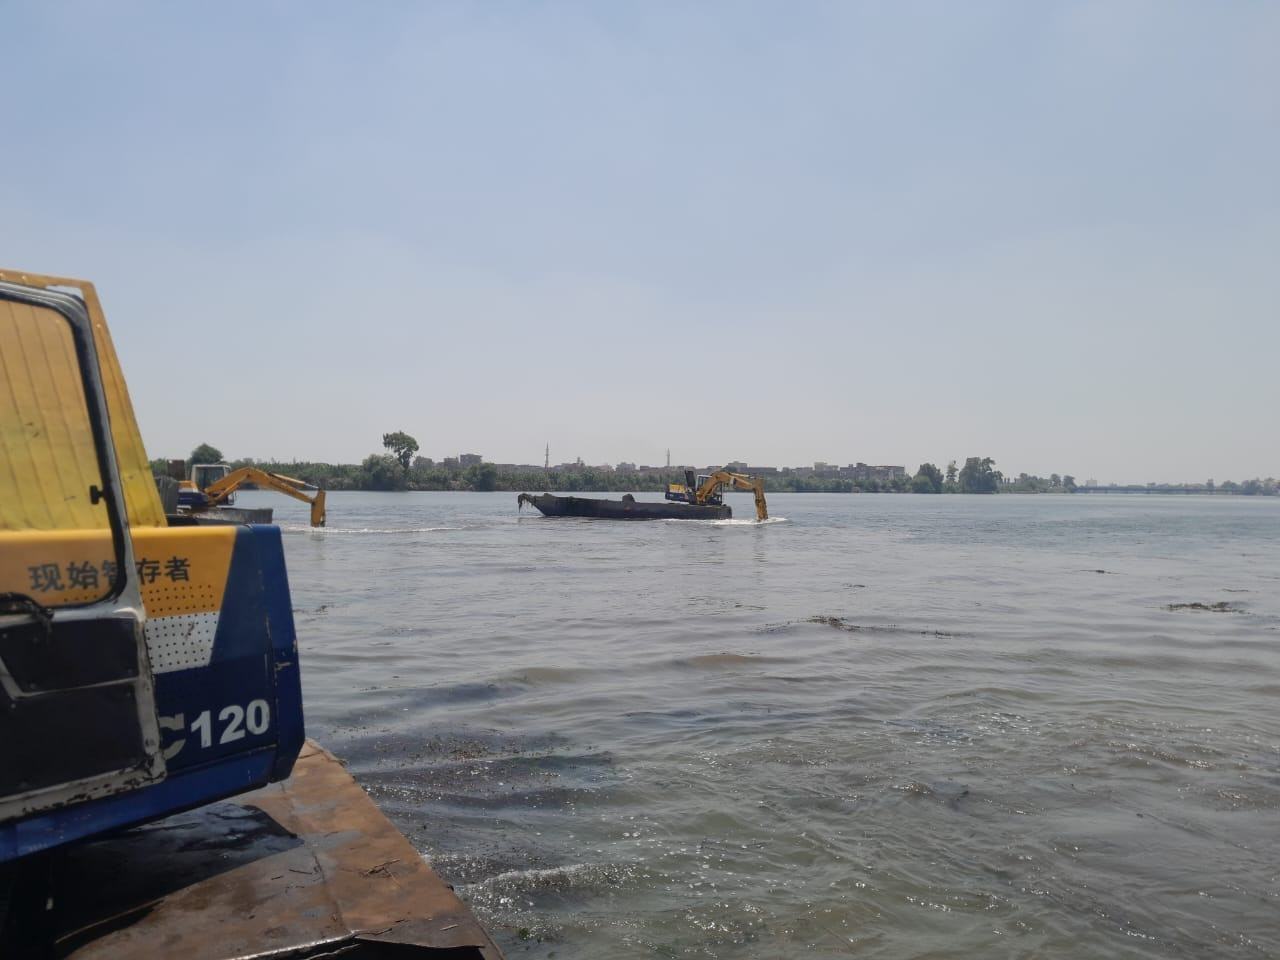 إزالة التعديات على نهر النيل